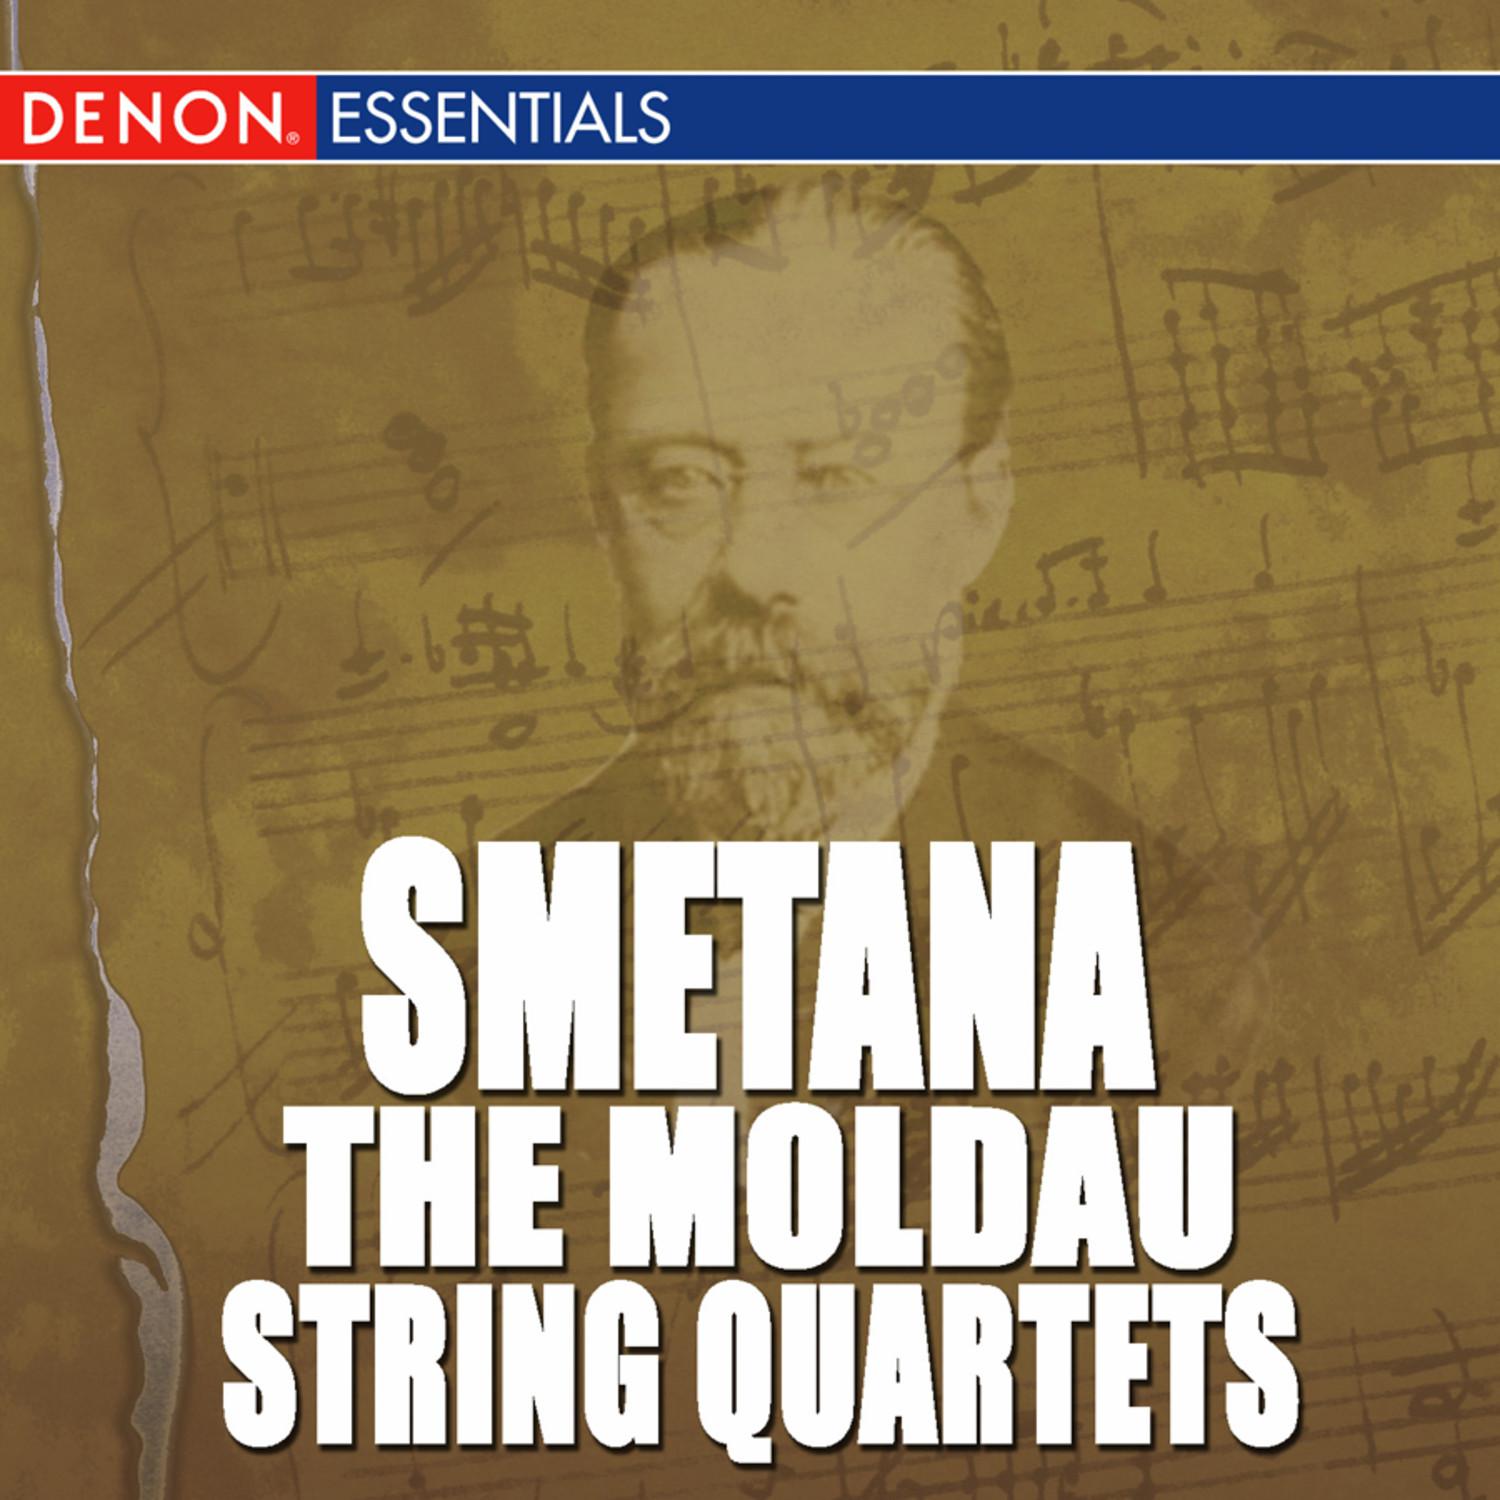 Quartet for Strings No. 1 in E Minor: II. Allegro vivo appassionato